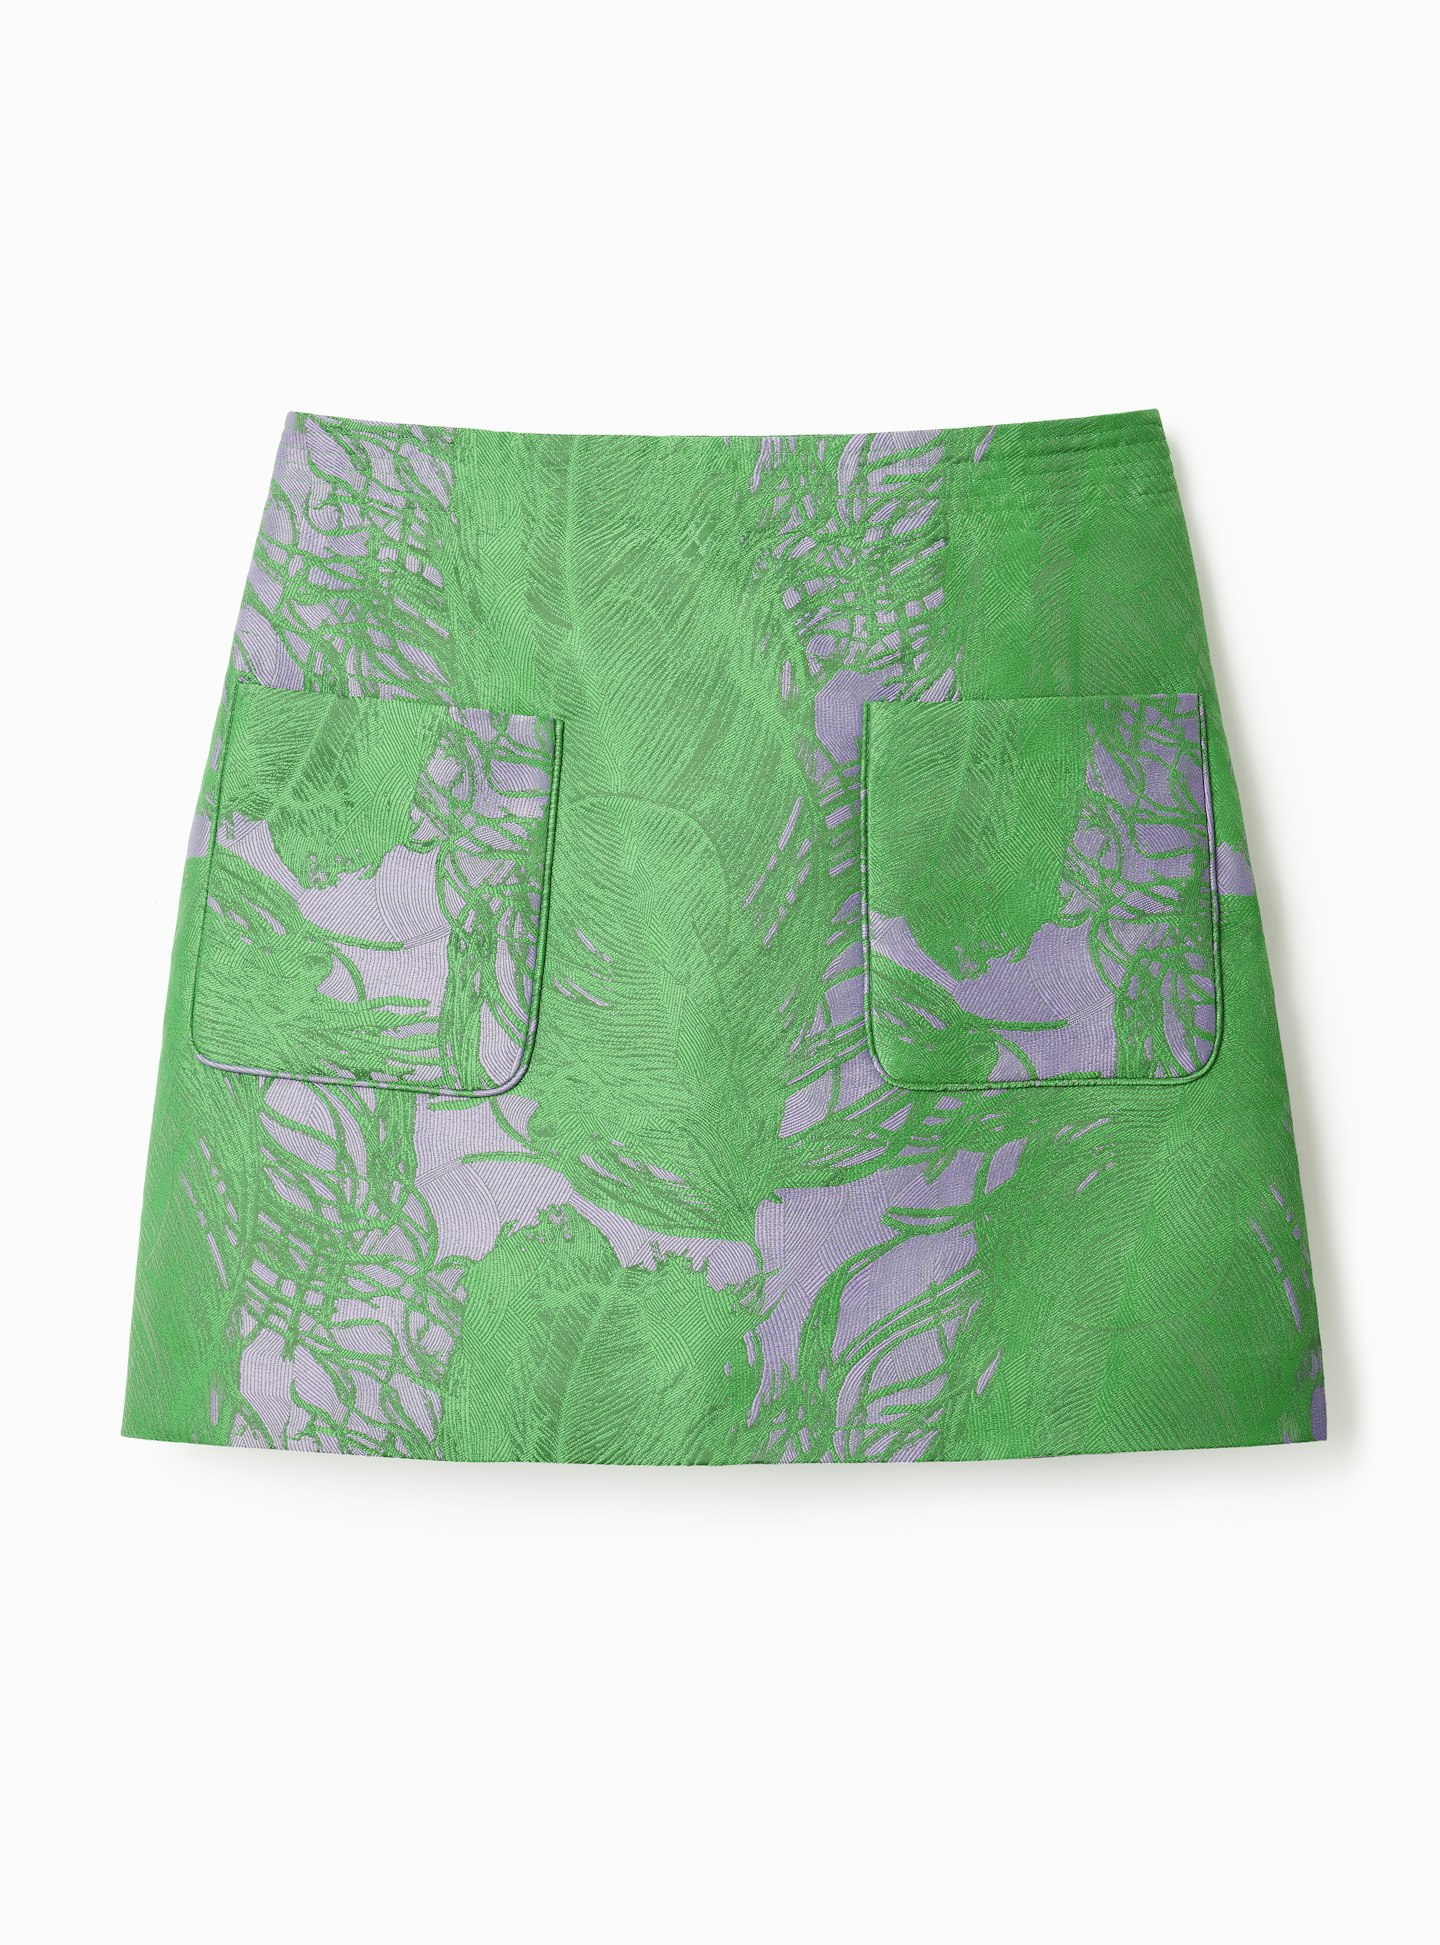 Skirt, £39.99